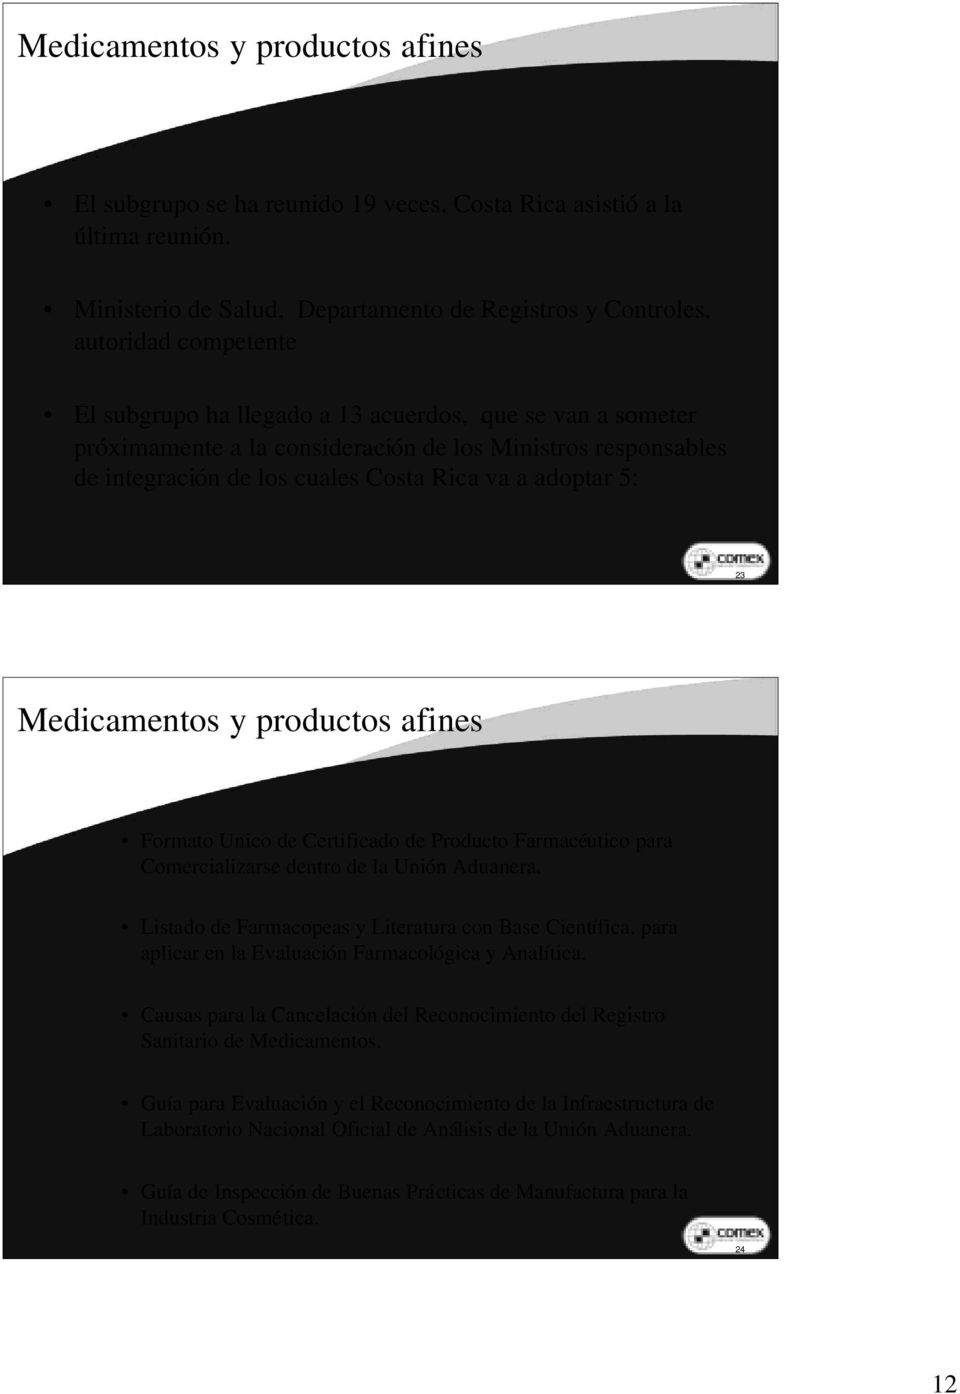 responsables de integración de los cuales Costa Rica va a adoptar 5: 23 Medicamentos y productos afines Formato Unico de Certificado de Producto Farmacéutico para Comercializarse dentro de la Unión